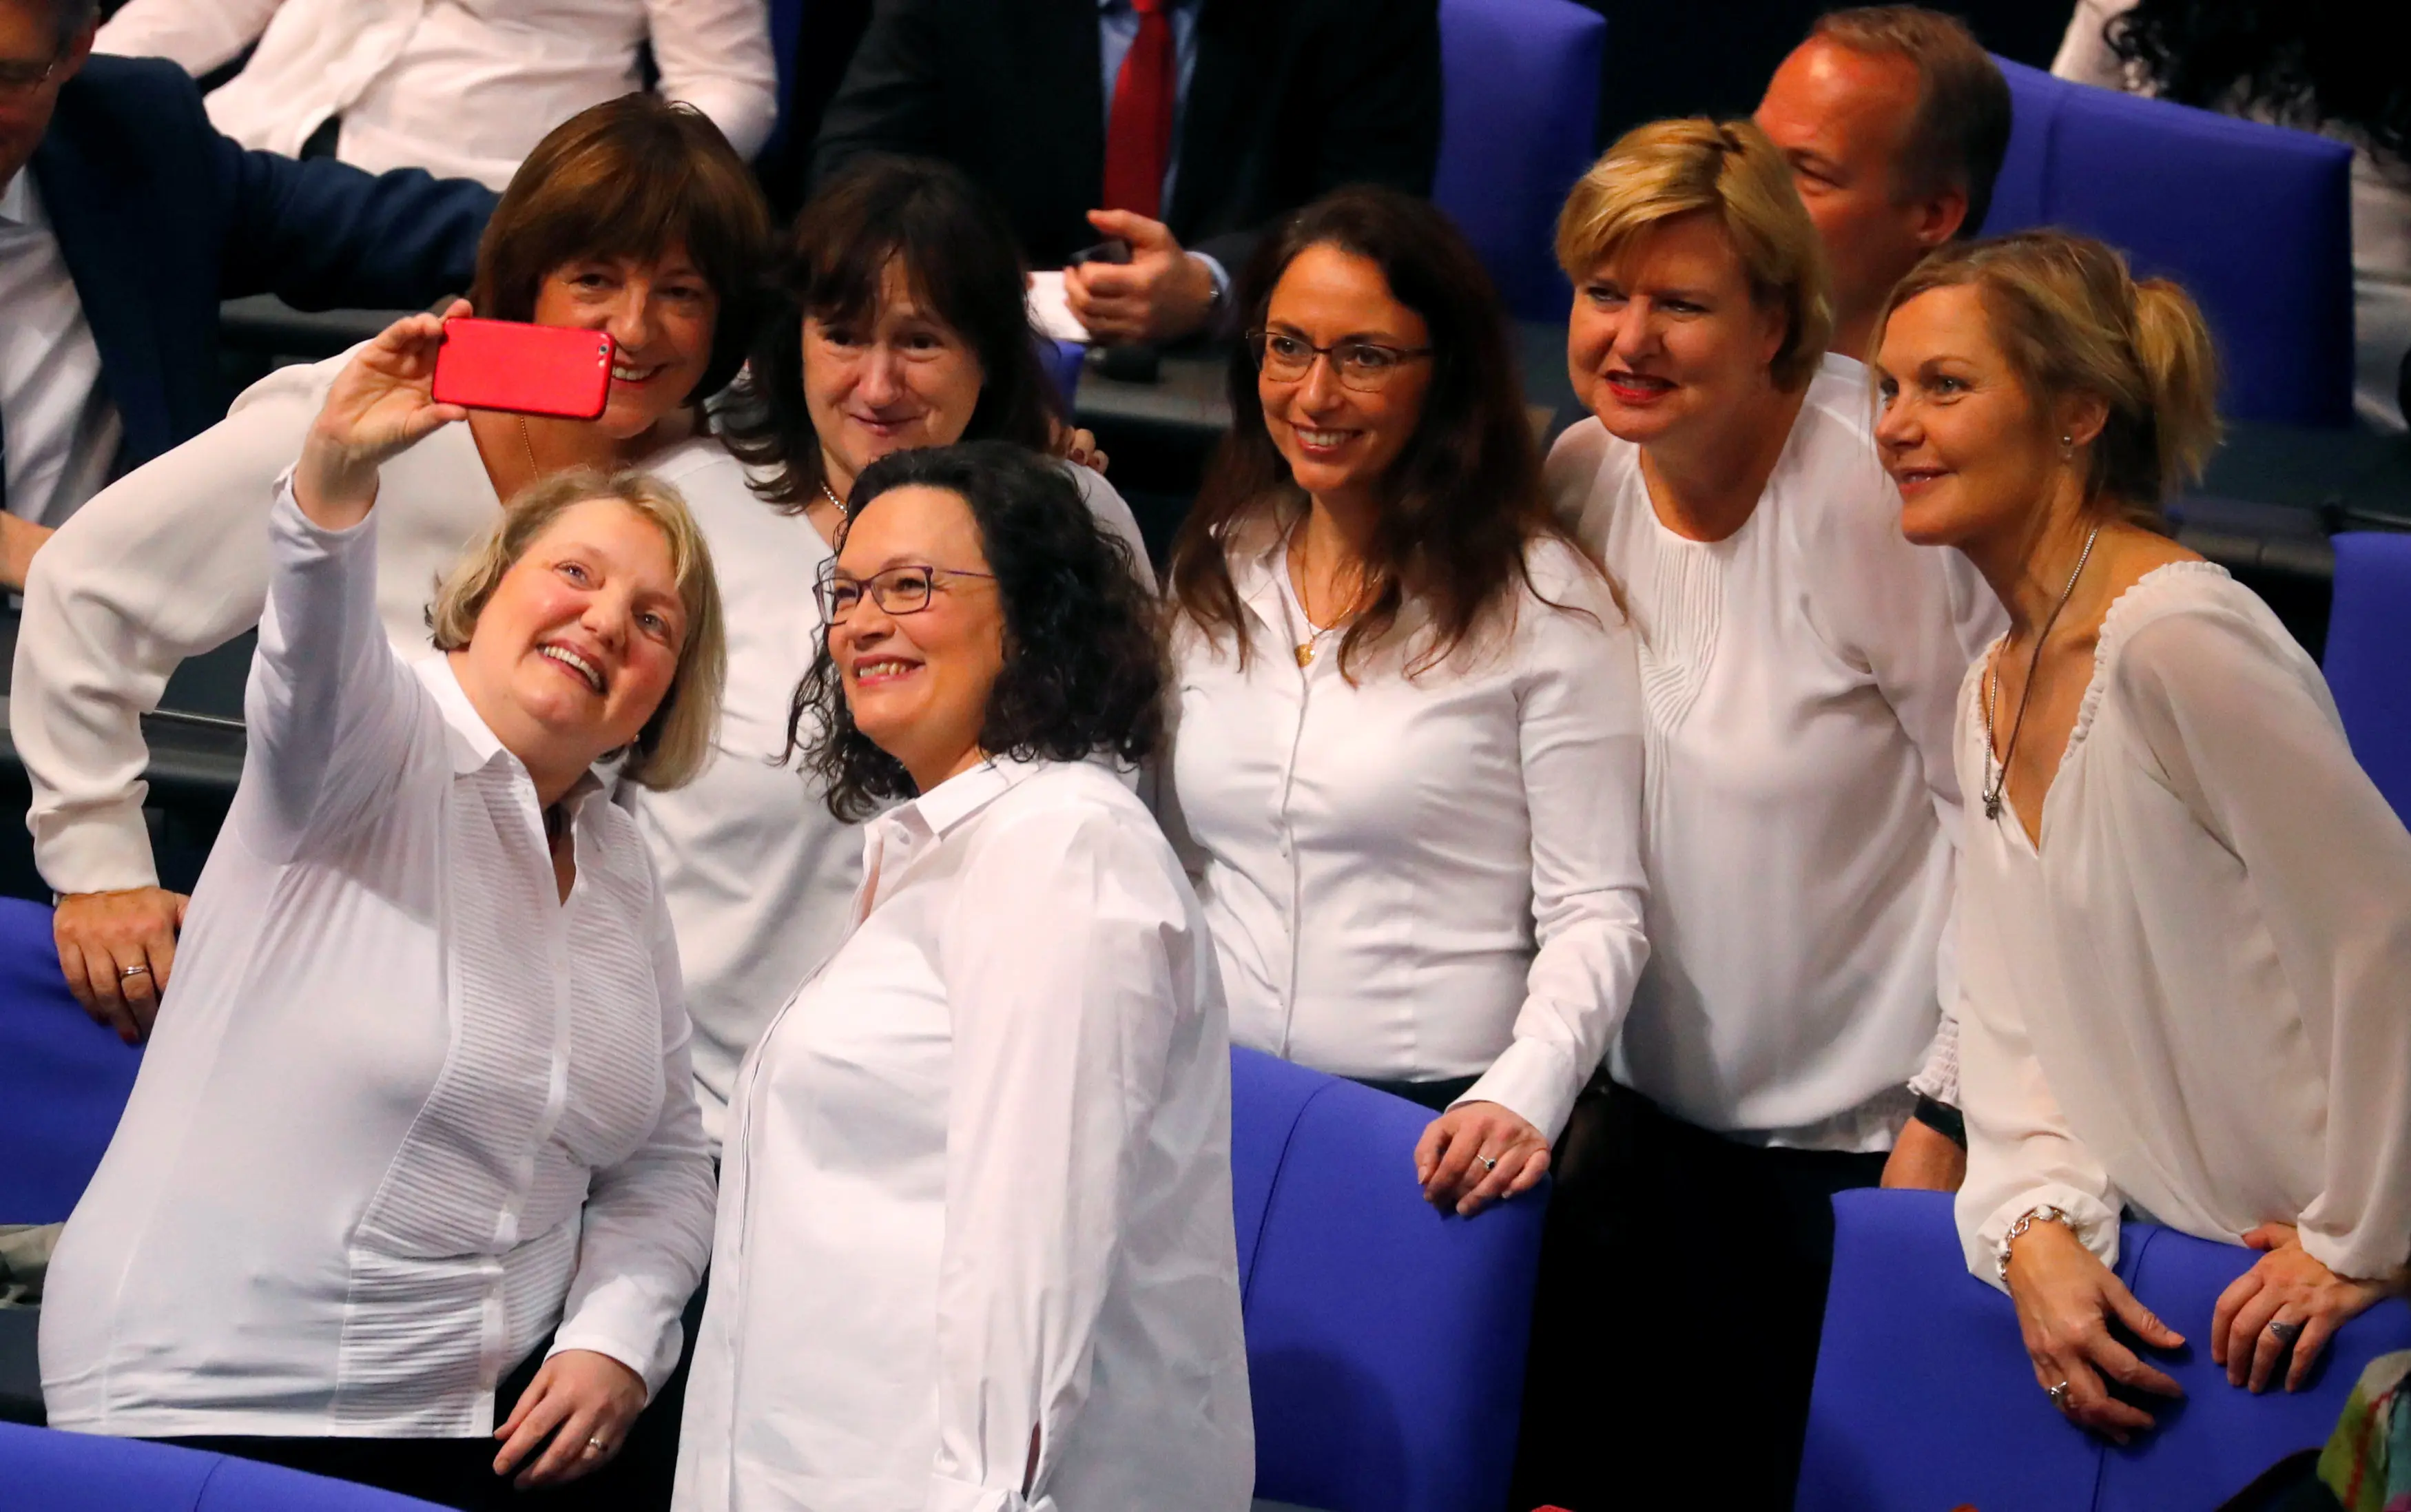 חברות פרלמנט מציינות בבונדסטג מאה שנה לזכות לנשים להצביע, גרמניה, ינואר 2019